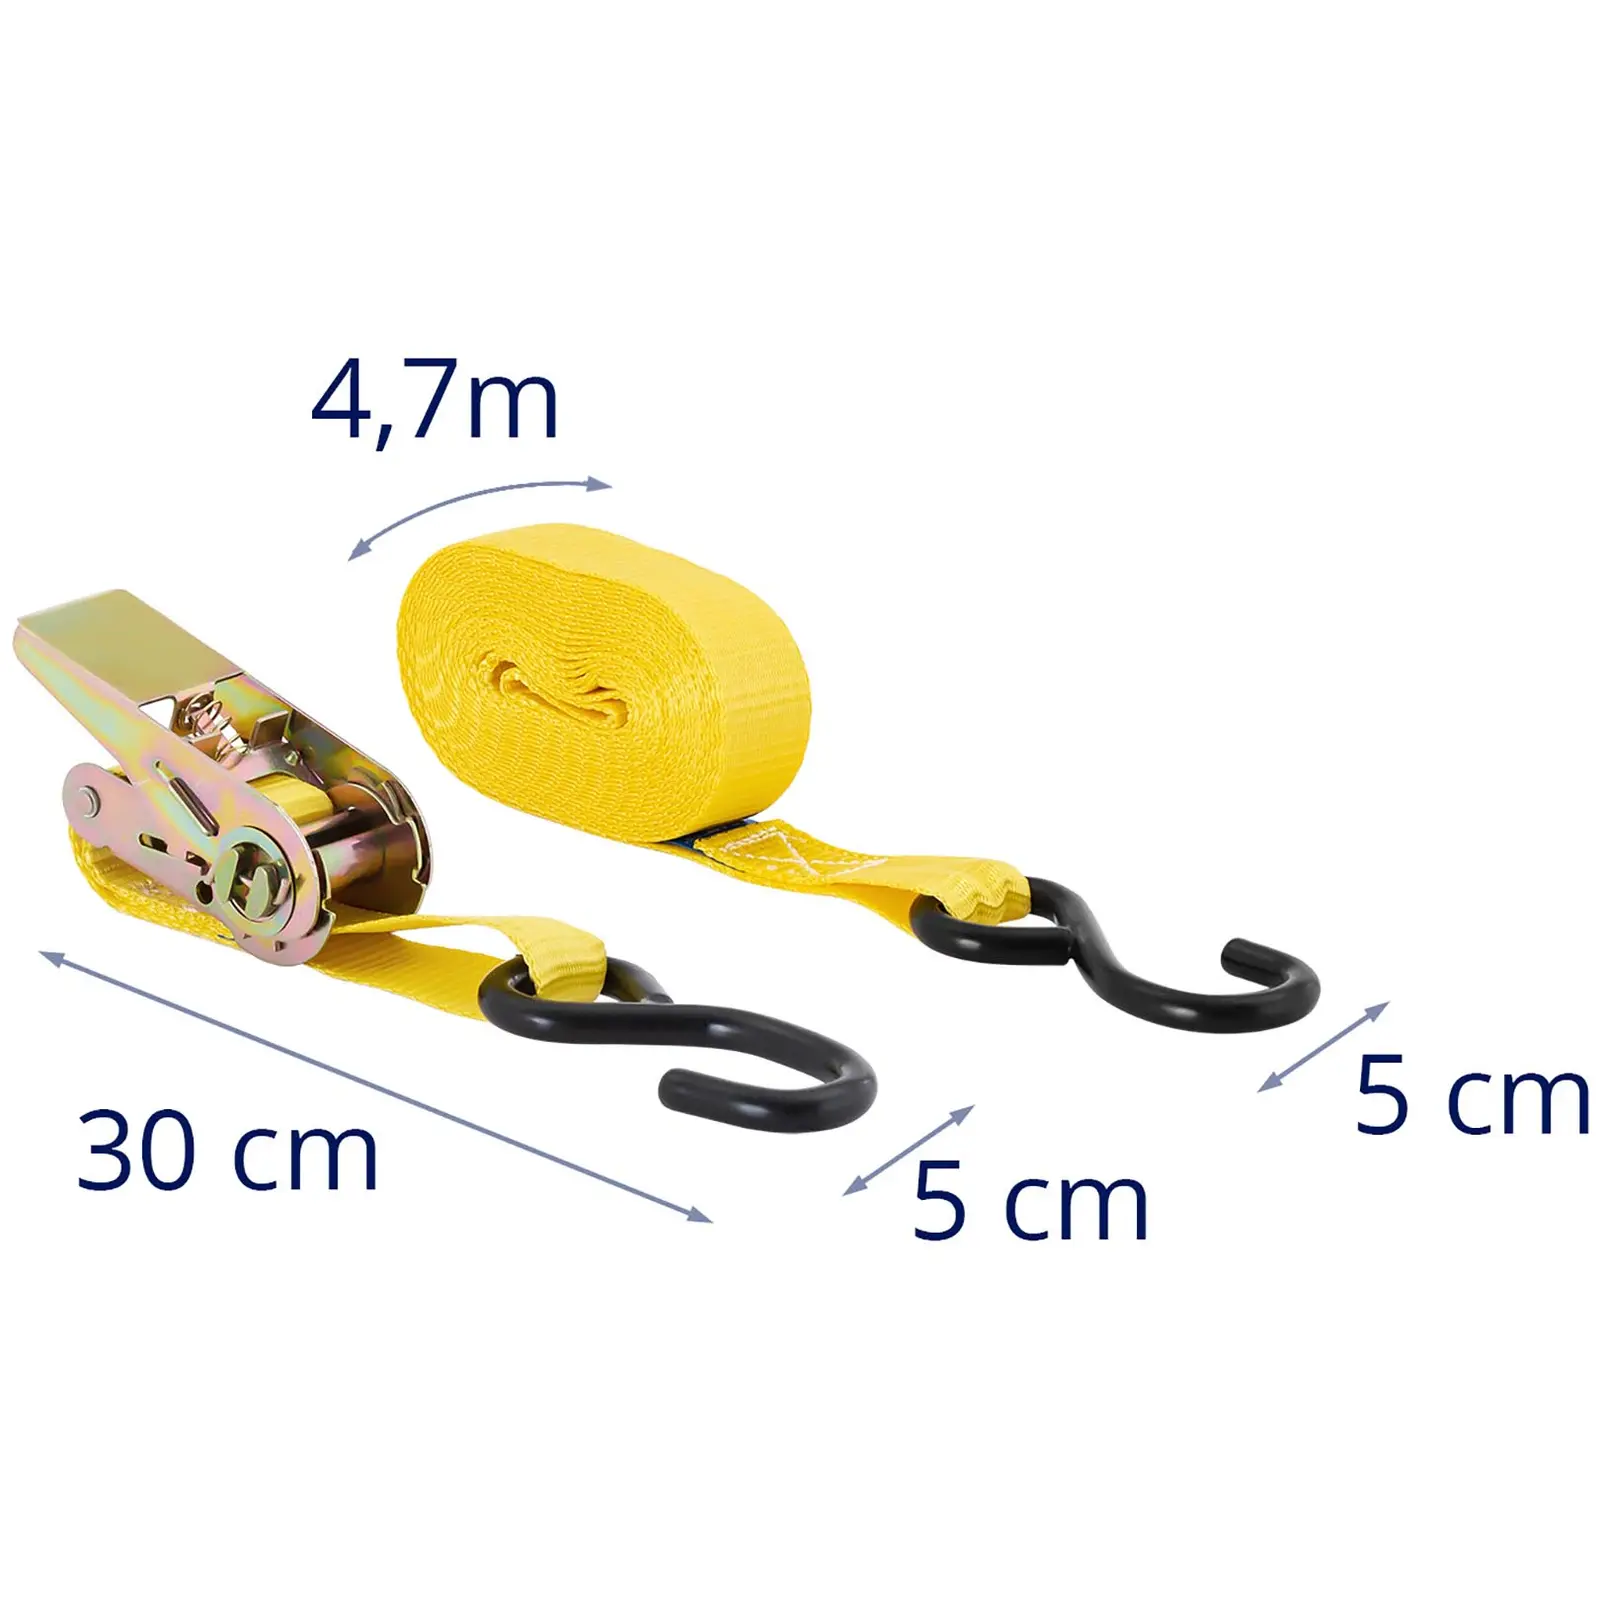 4 Ratchet Straps - load restraint - 5 m (4.7 m loose end + 0.3 m fixed end)